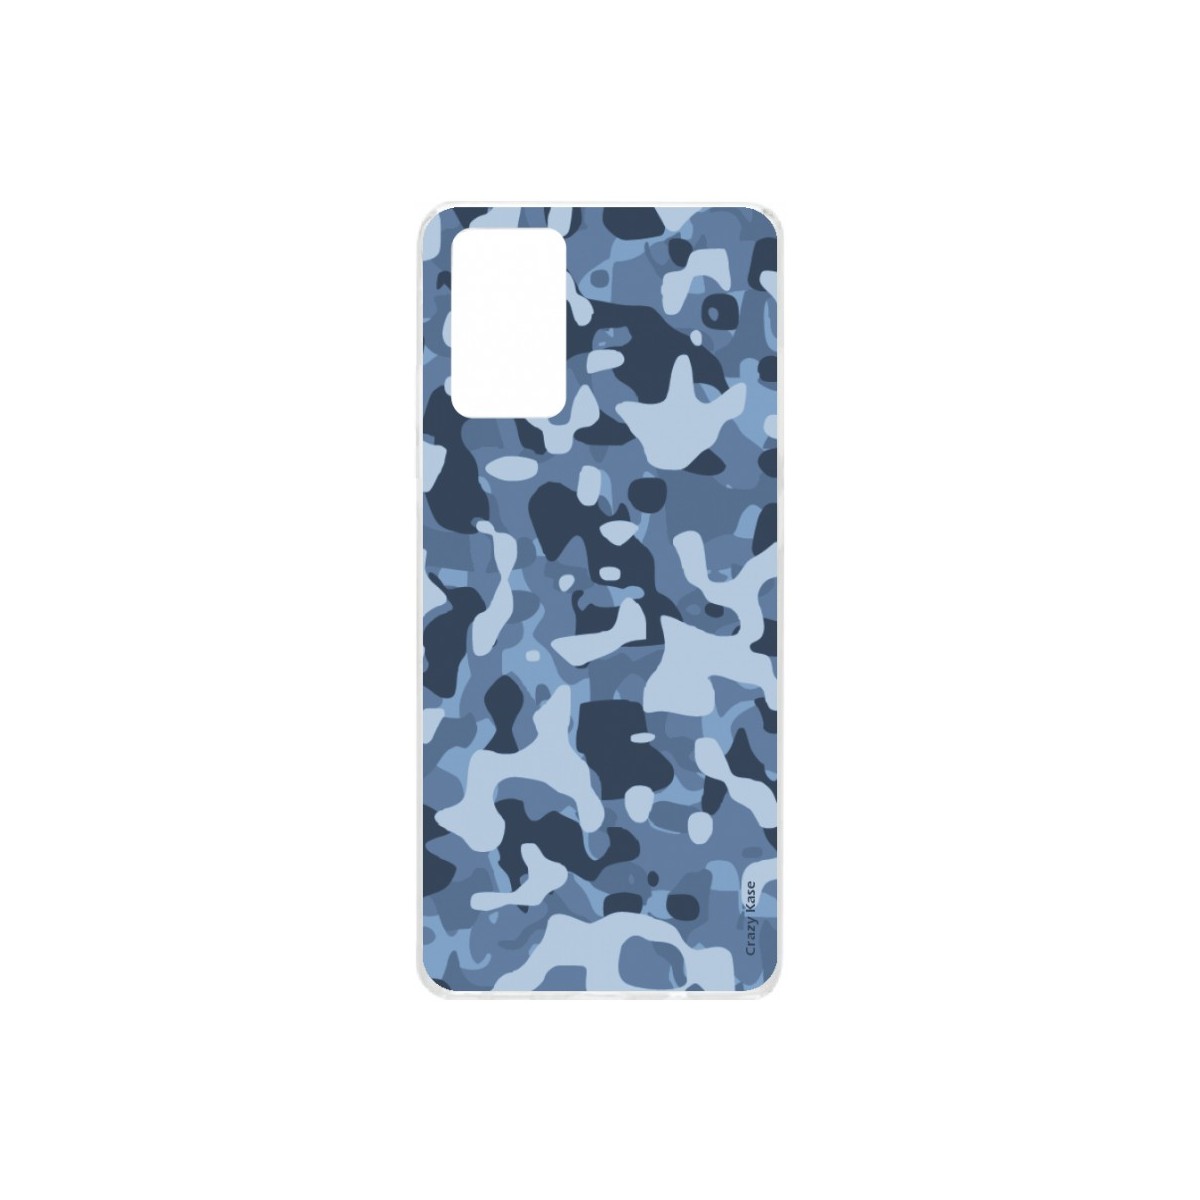 Coque Samsung Galaxy S20 Plus souple Camouflage militaire bleu Crazy Kase